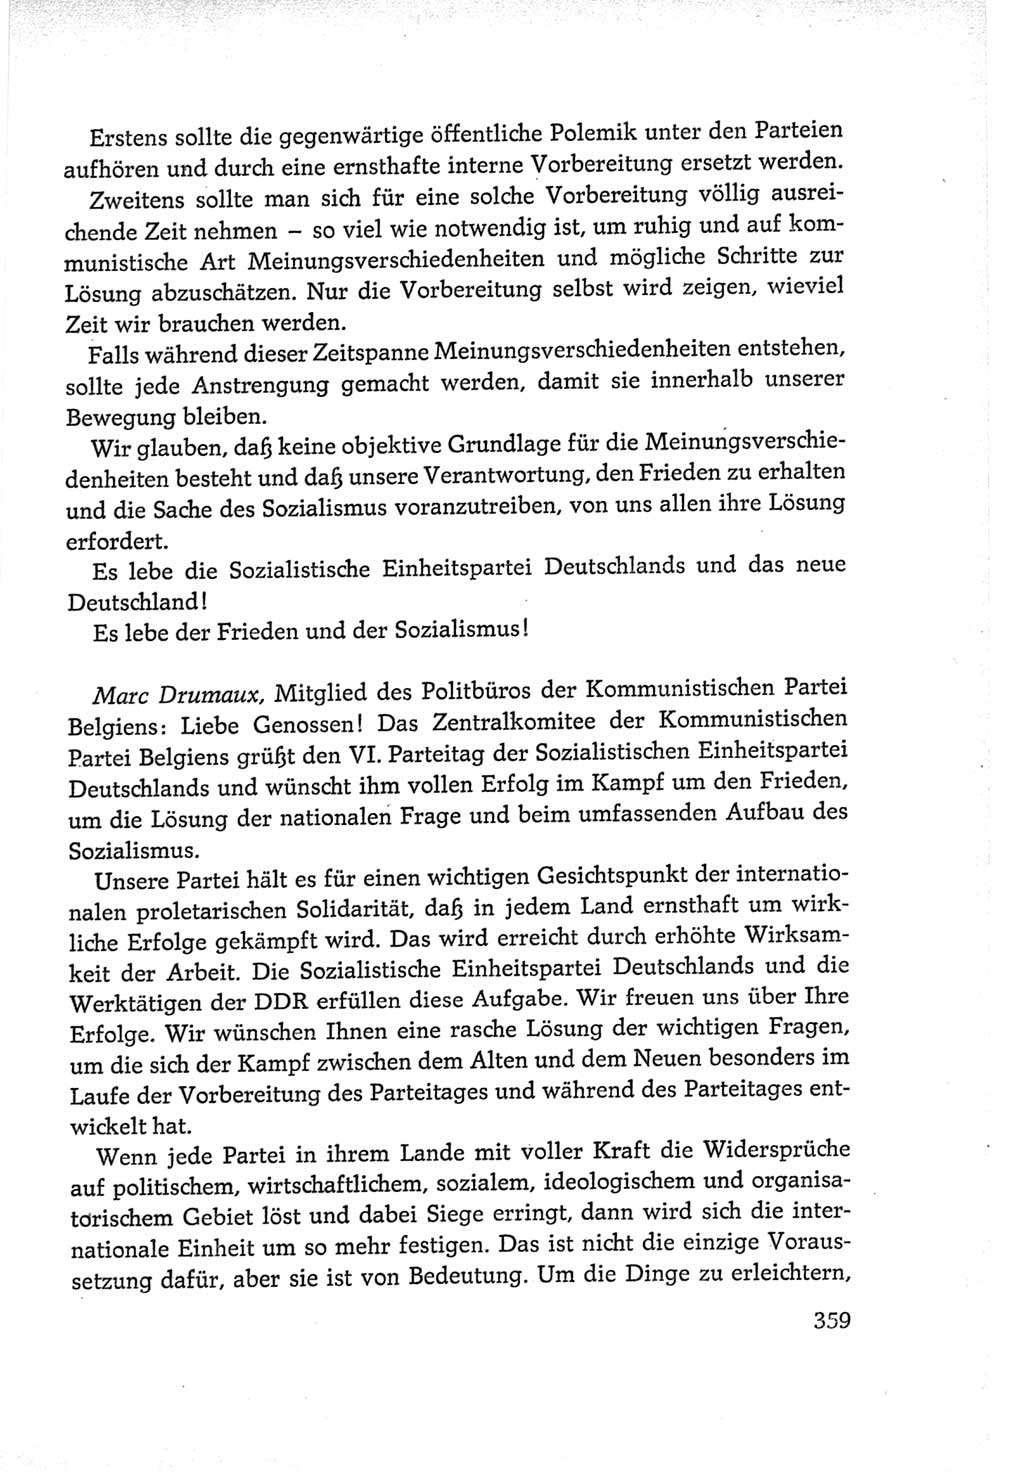 Protokoll der Verhandlungen des Ⅵ. Parteitages der Sozialistischen Einheitspartei Deutschlands (SED) [Deutsche Demokratische Republik (DDR)] 1963, Band Ⅱ, Seite 359 (Prot. Verh. Ⅵ. PT SED DDR 1963, Bd. Ⅱ, S. 359)